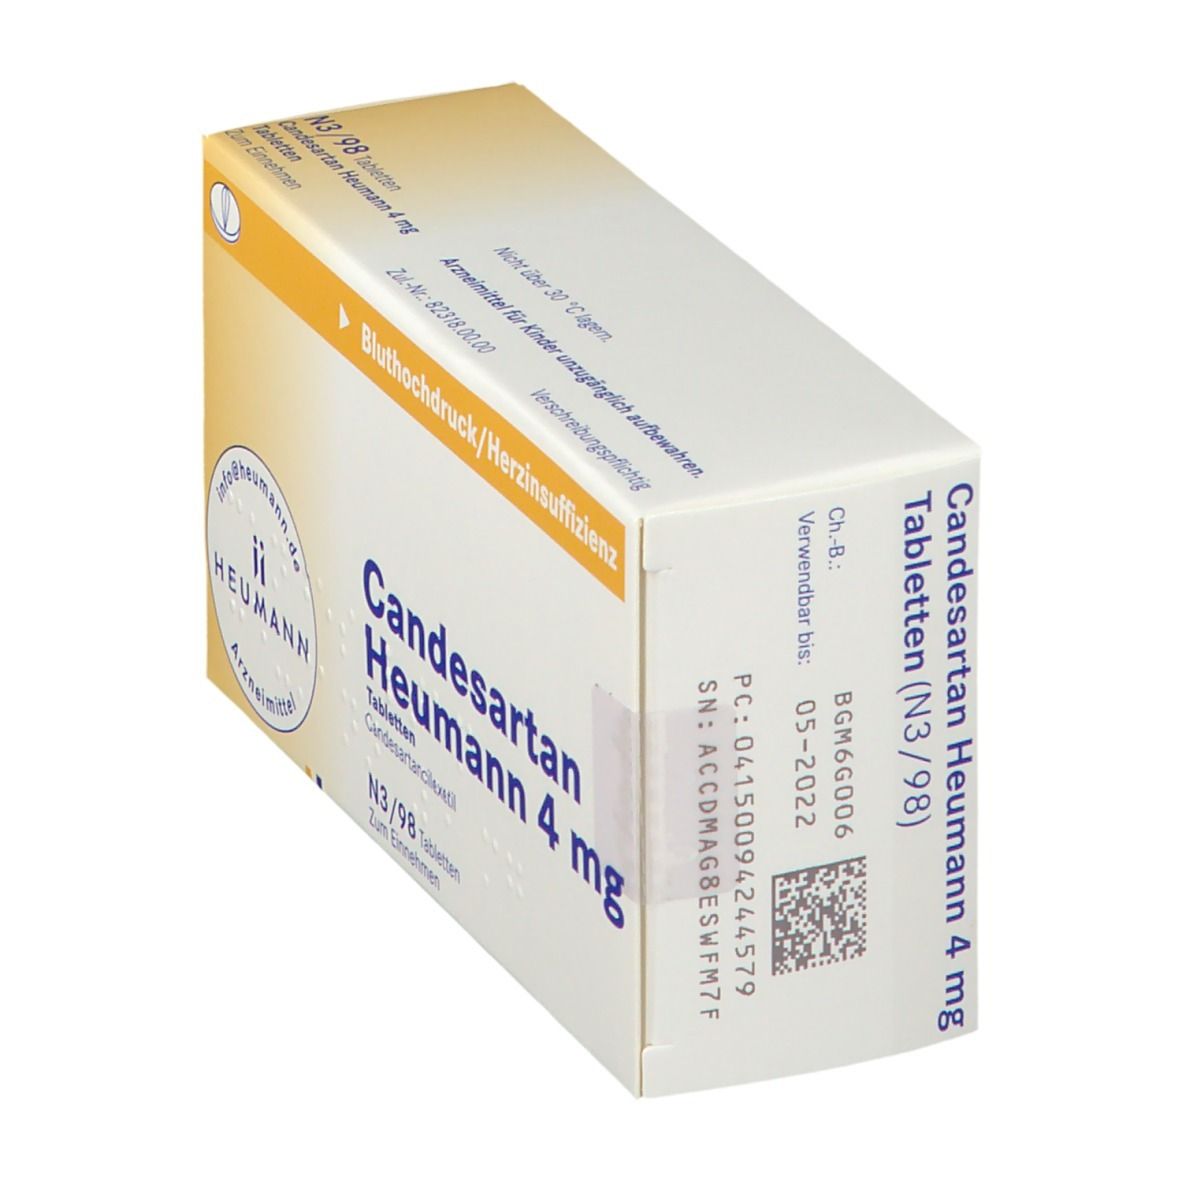 Candesartan Heumann 4 mg